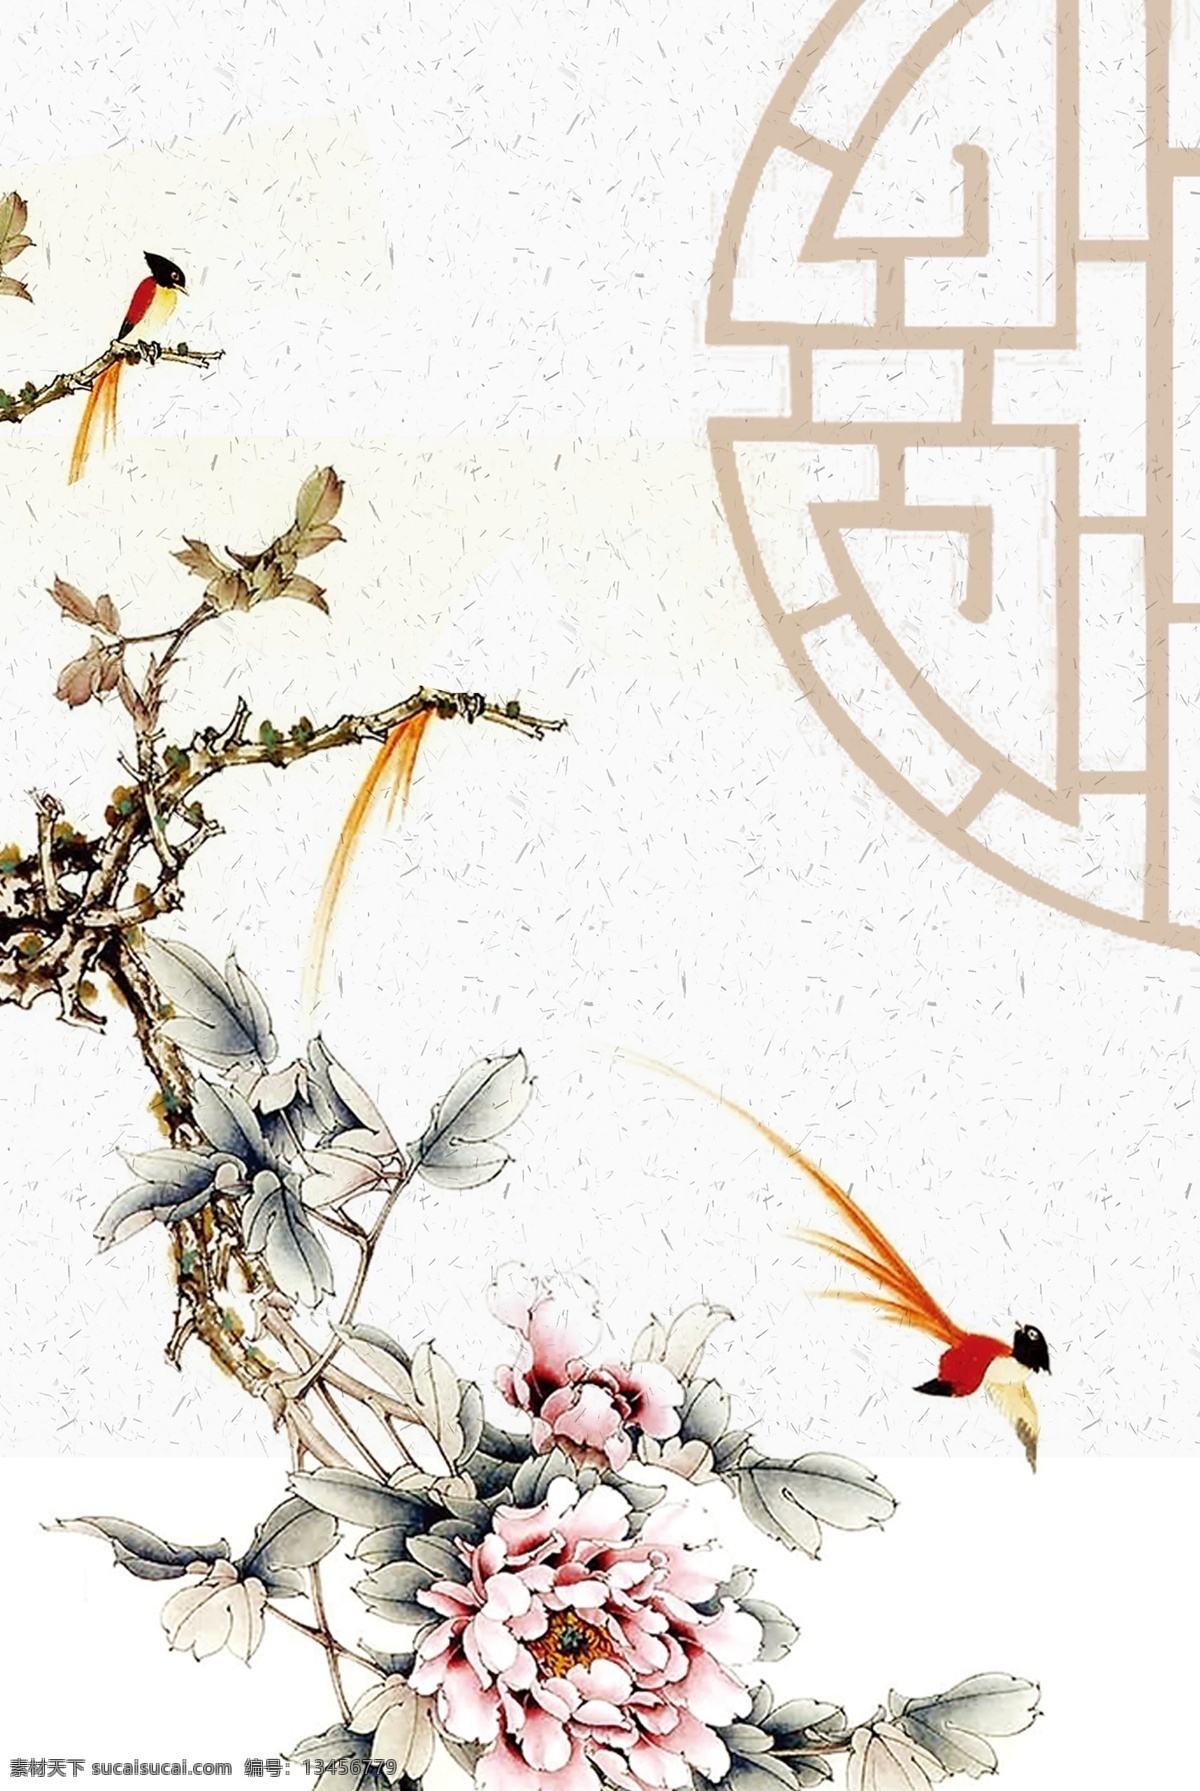 典雅 花鸟 古风 海报 背景 复古 中国风 文艺 清新 质感 纹理